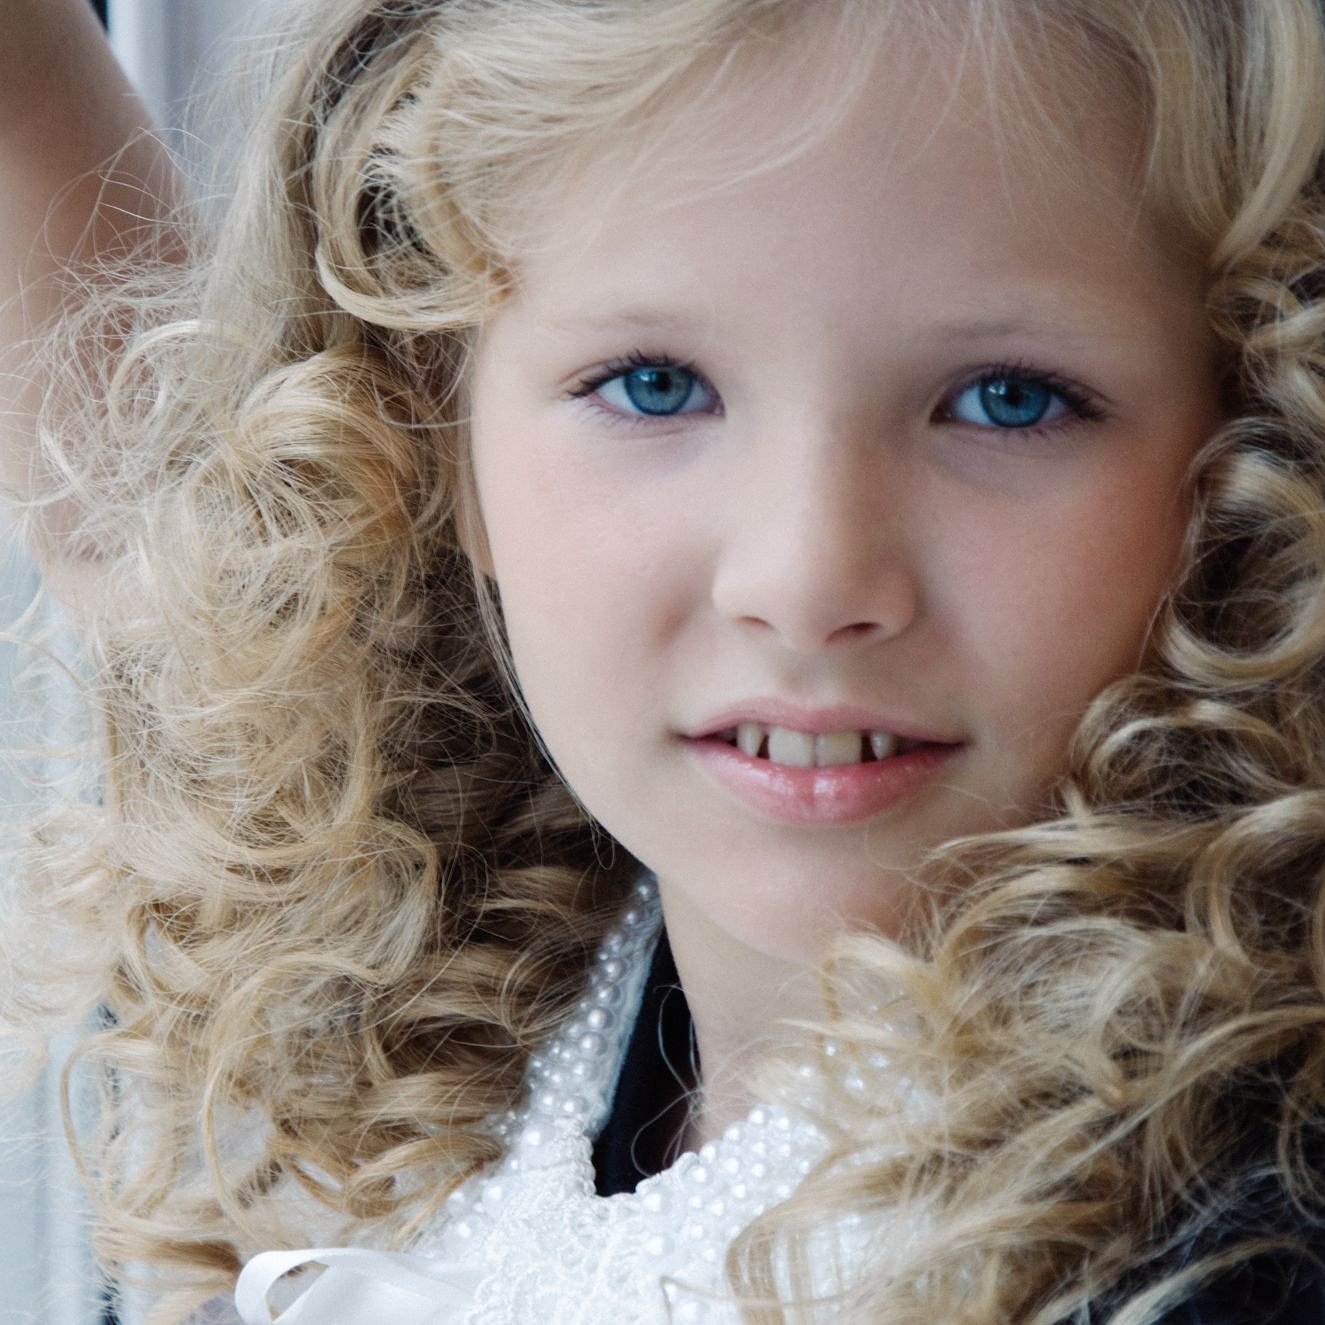 Ева Лыжина - аккредитованная модель для участия в подиумных показах на Междунродной Детской Неделе моды